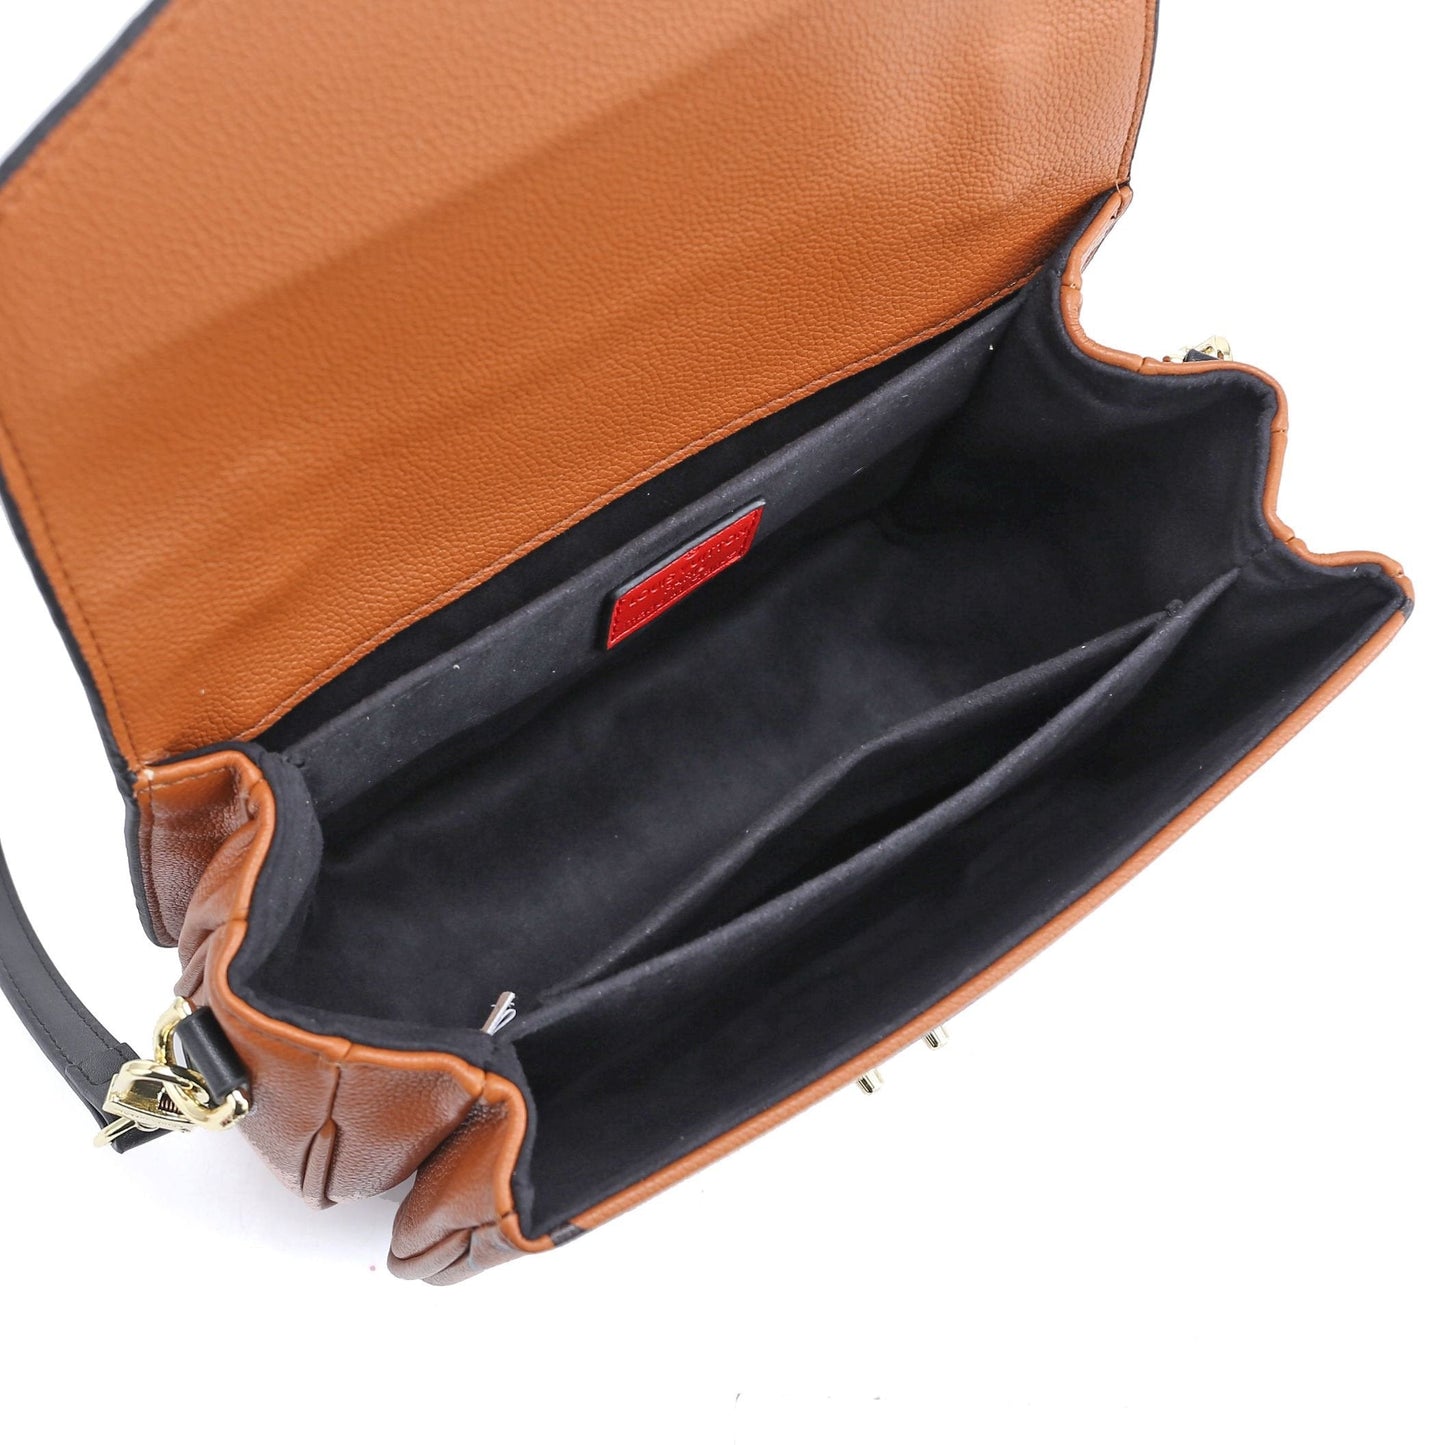 VO - AF Handbags LUV 041